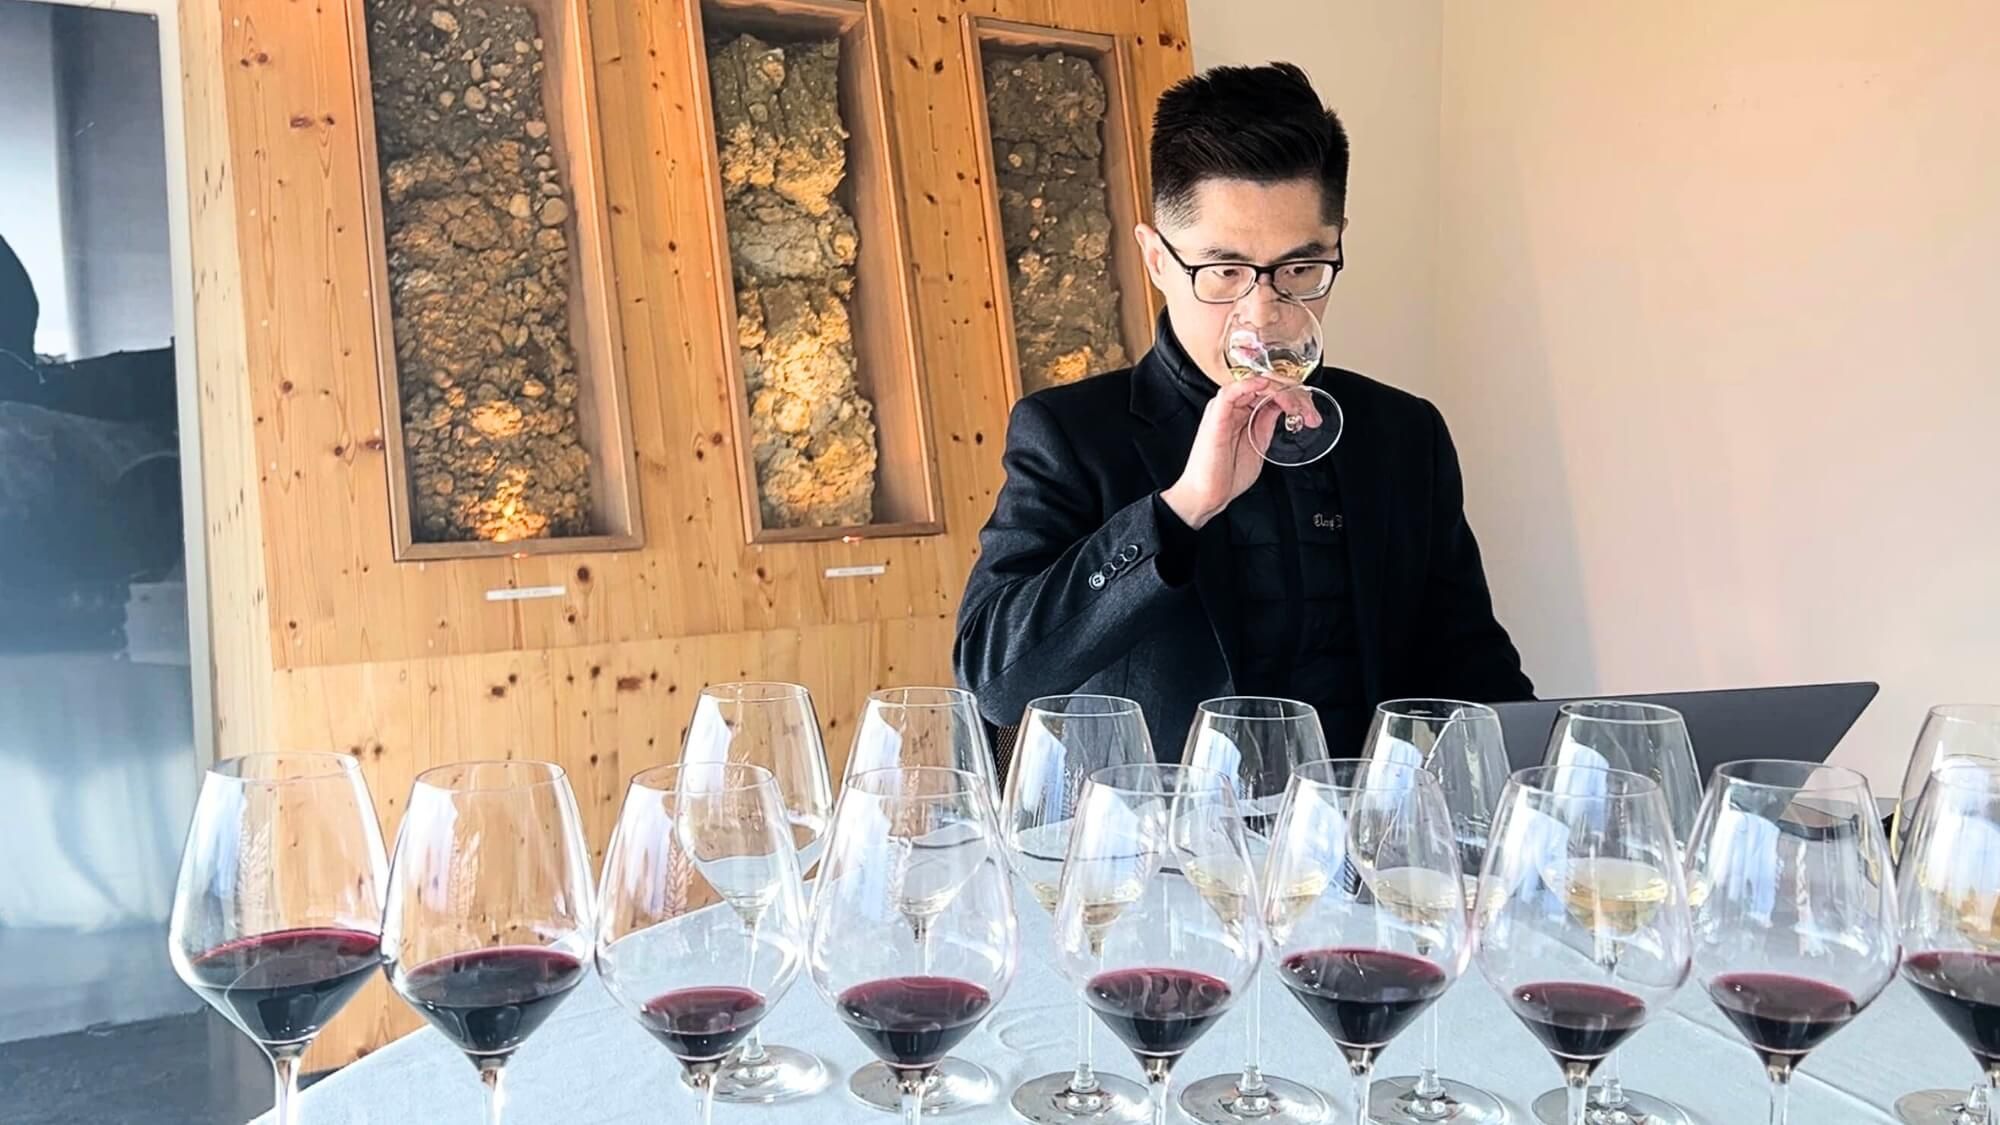 AMA Tasting Report-Bordeaux 2021 In Bottle - Alexandre MA